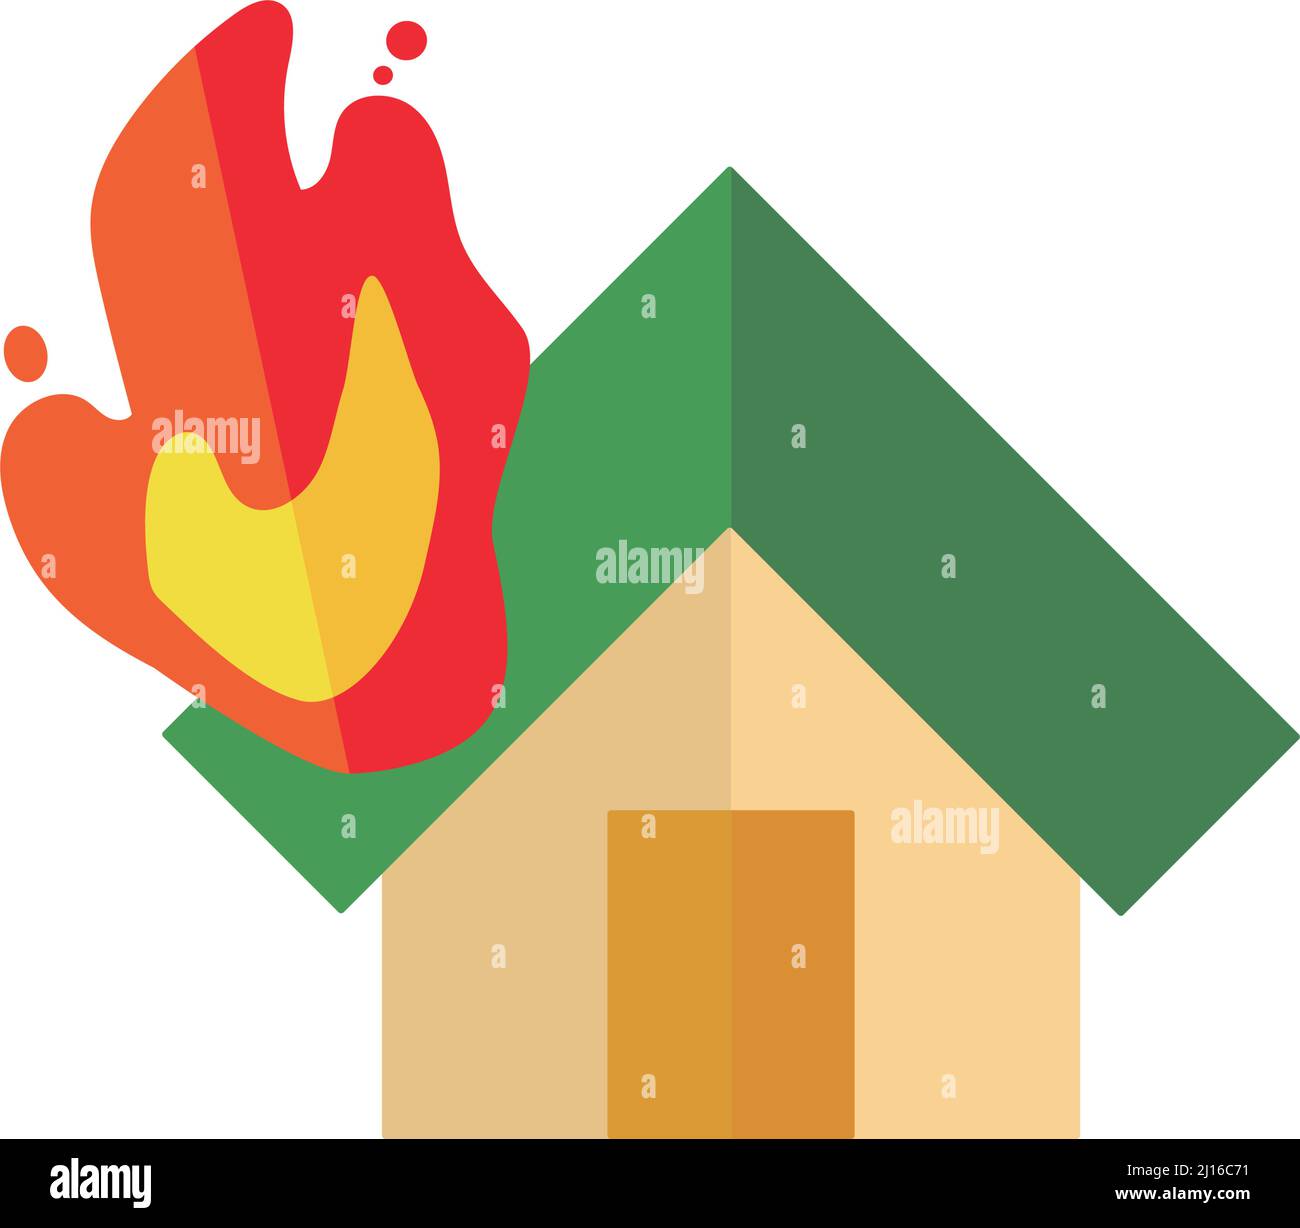 Ikone eines brennenden Hauses. Feuer. Bearbeitbarer Vektor. Stock Vektor